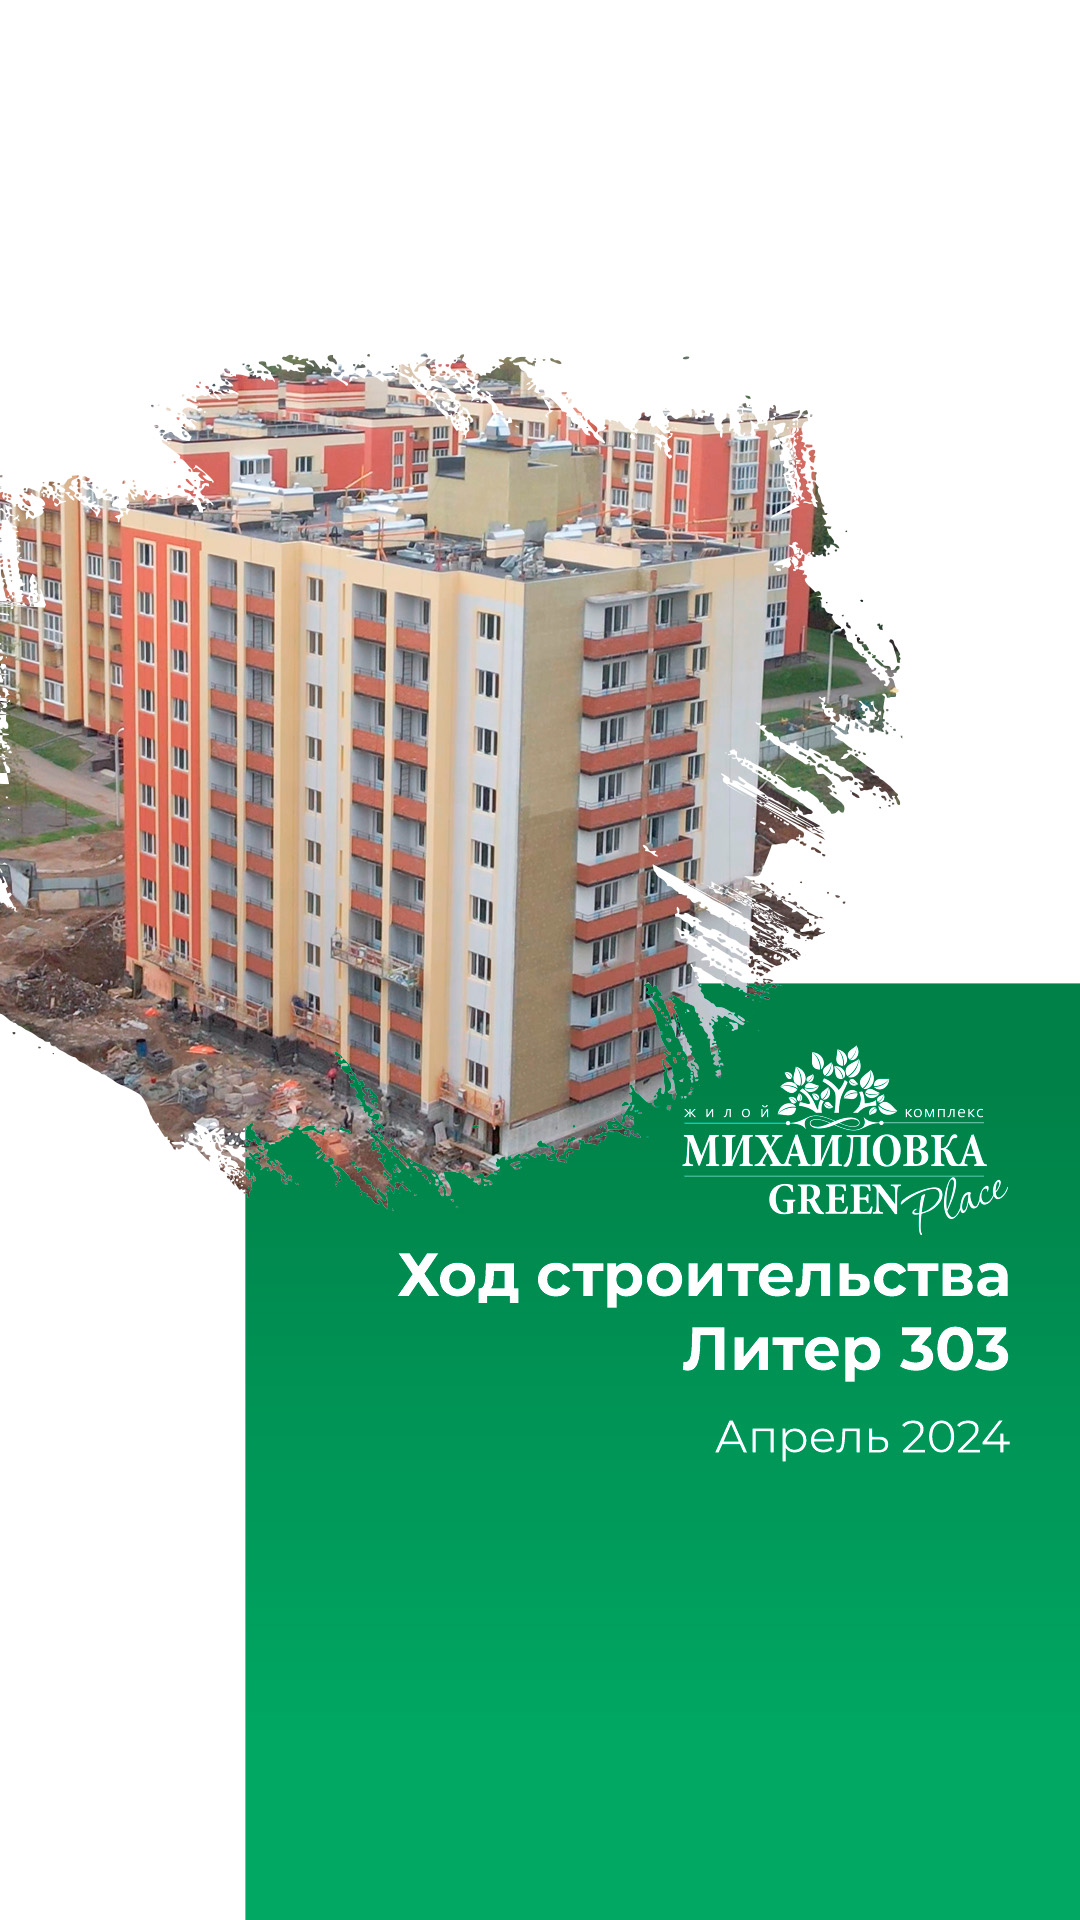 🏗Отчет о ходе строительства за апрель 2024 г. в ЖК "Михайловка Green Place"